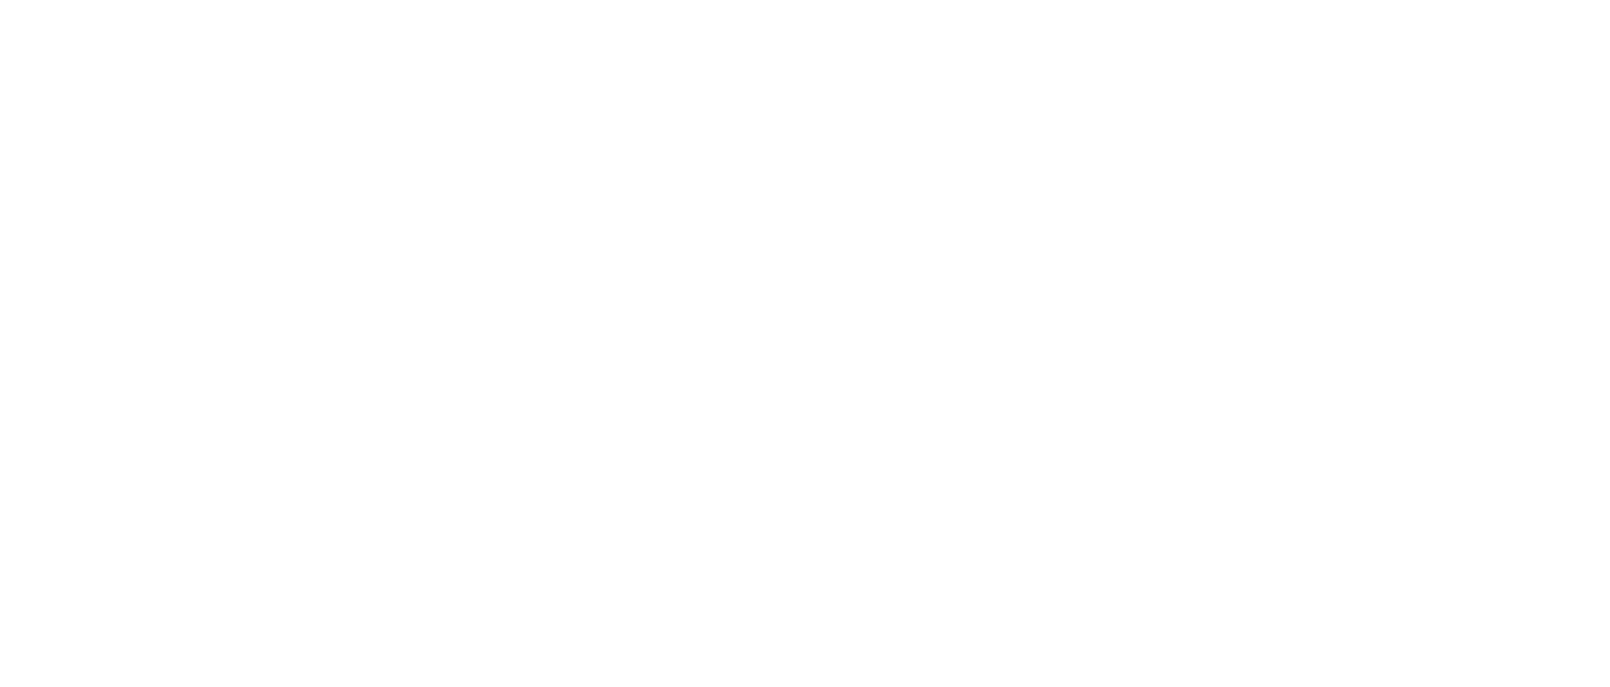 Our Church Banner